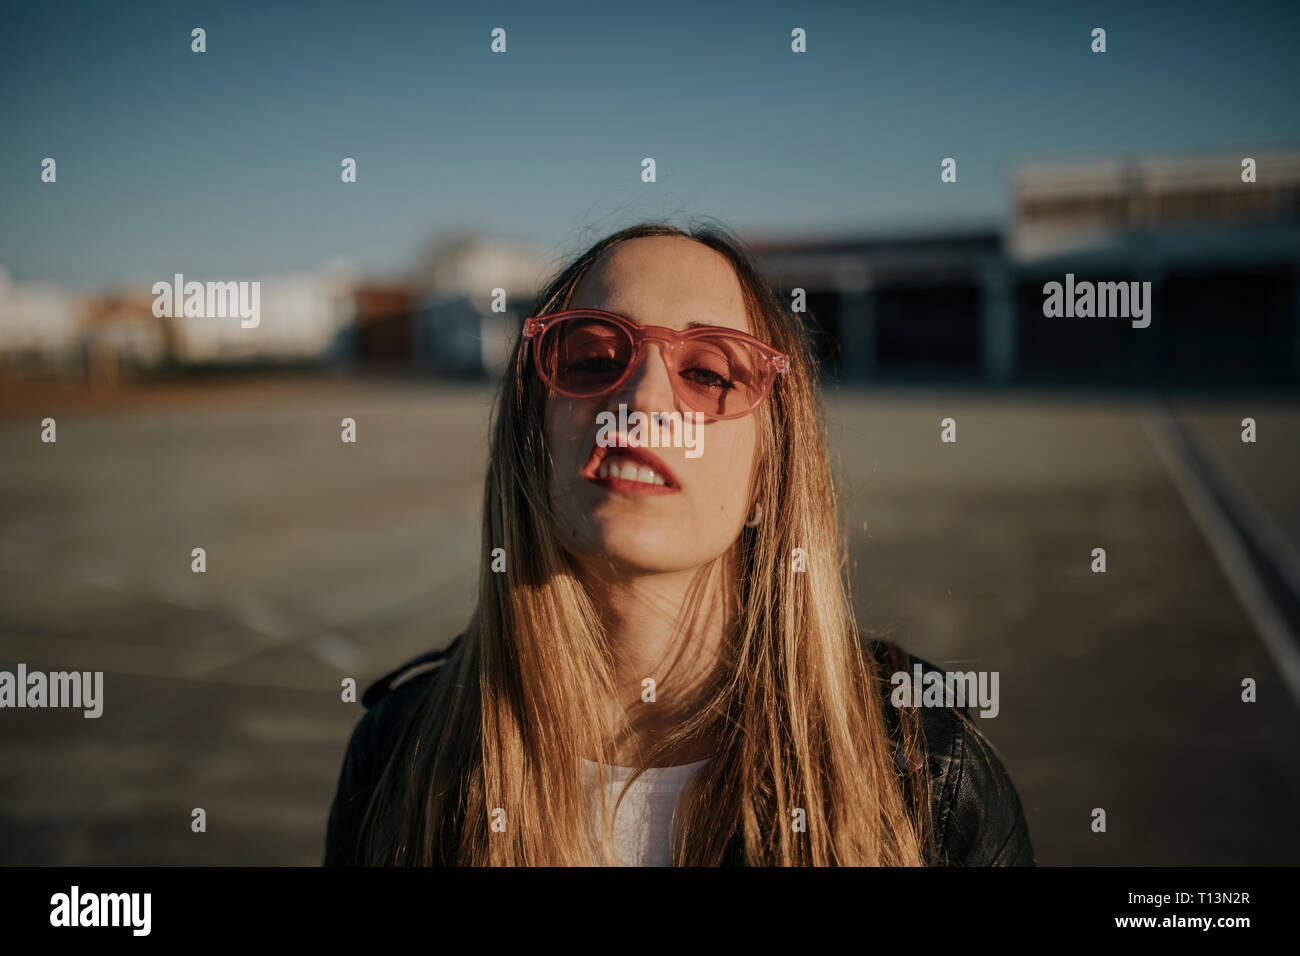 Retrato de mujer joven con actitud desafiante con gafas de sol al aire libre Foto de stock